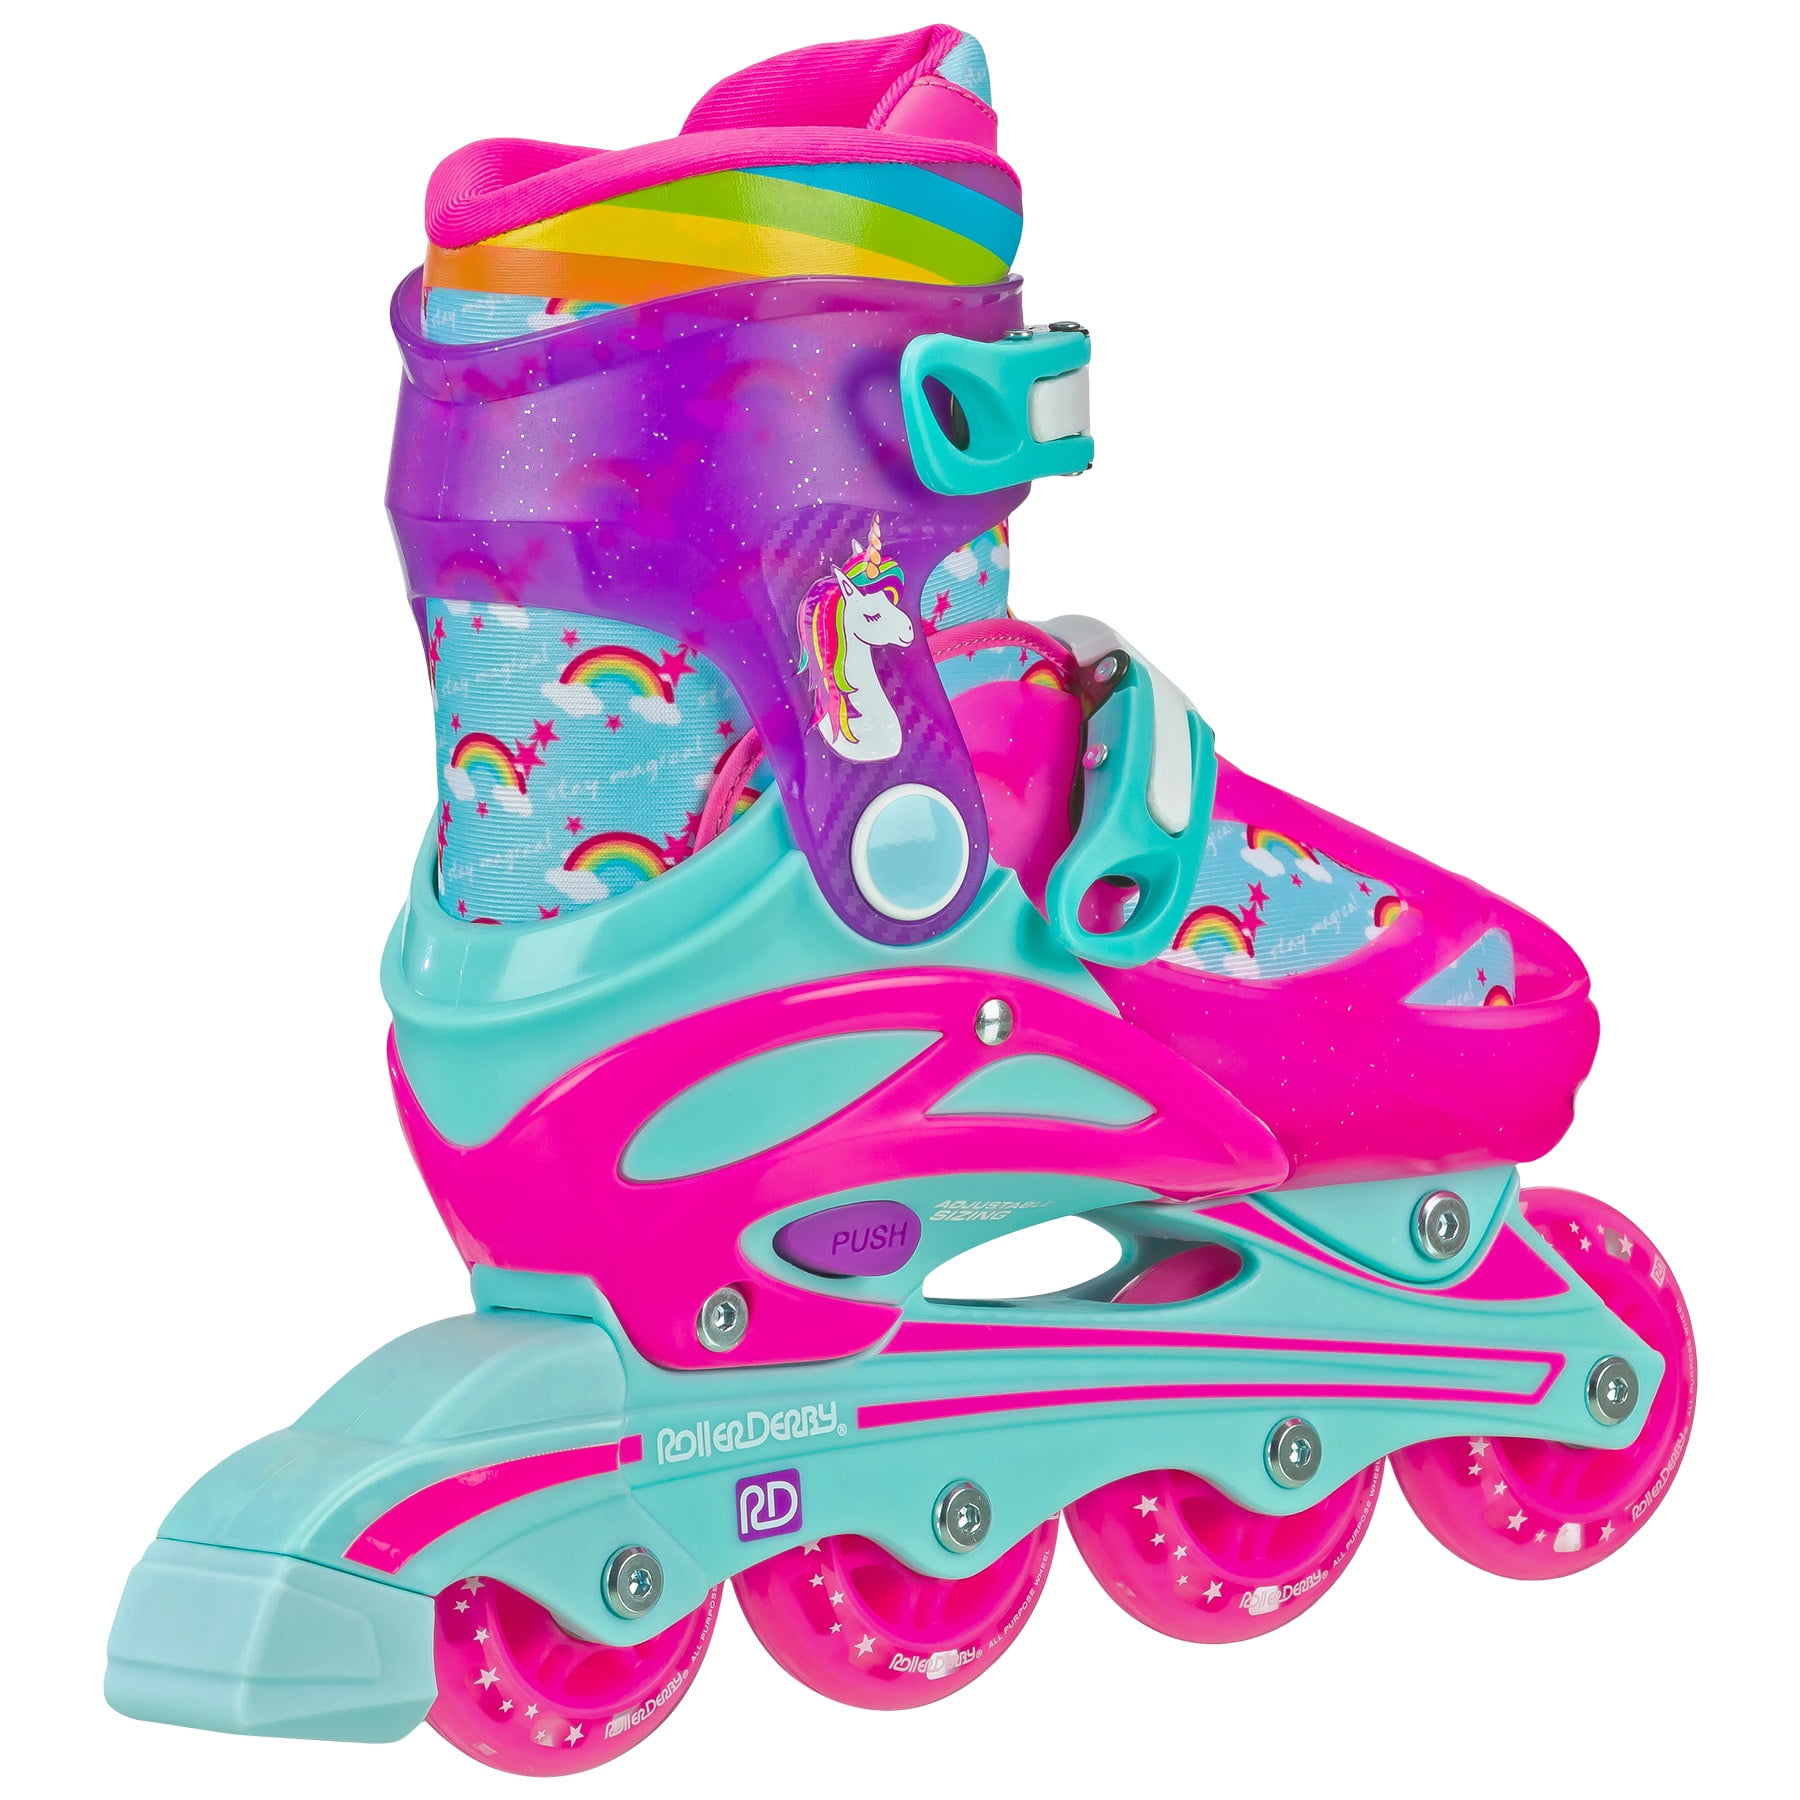 Quad Combo Skates Roller Derby Girl's Blue/Pink Inline Adjustable Size 3-6 